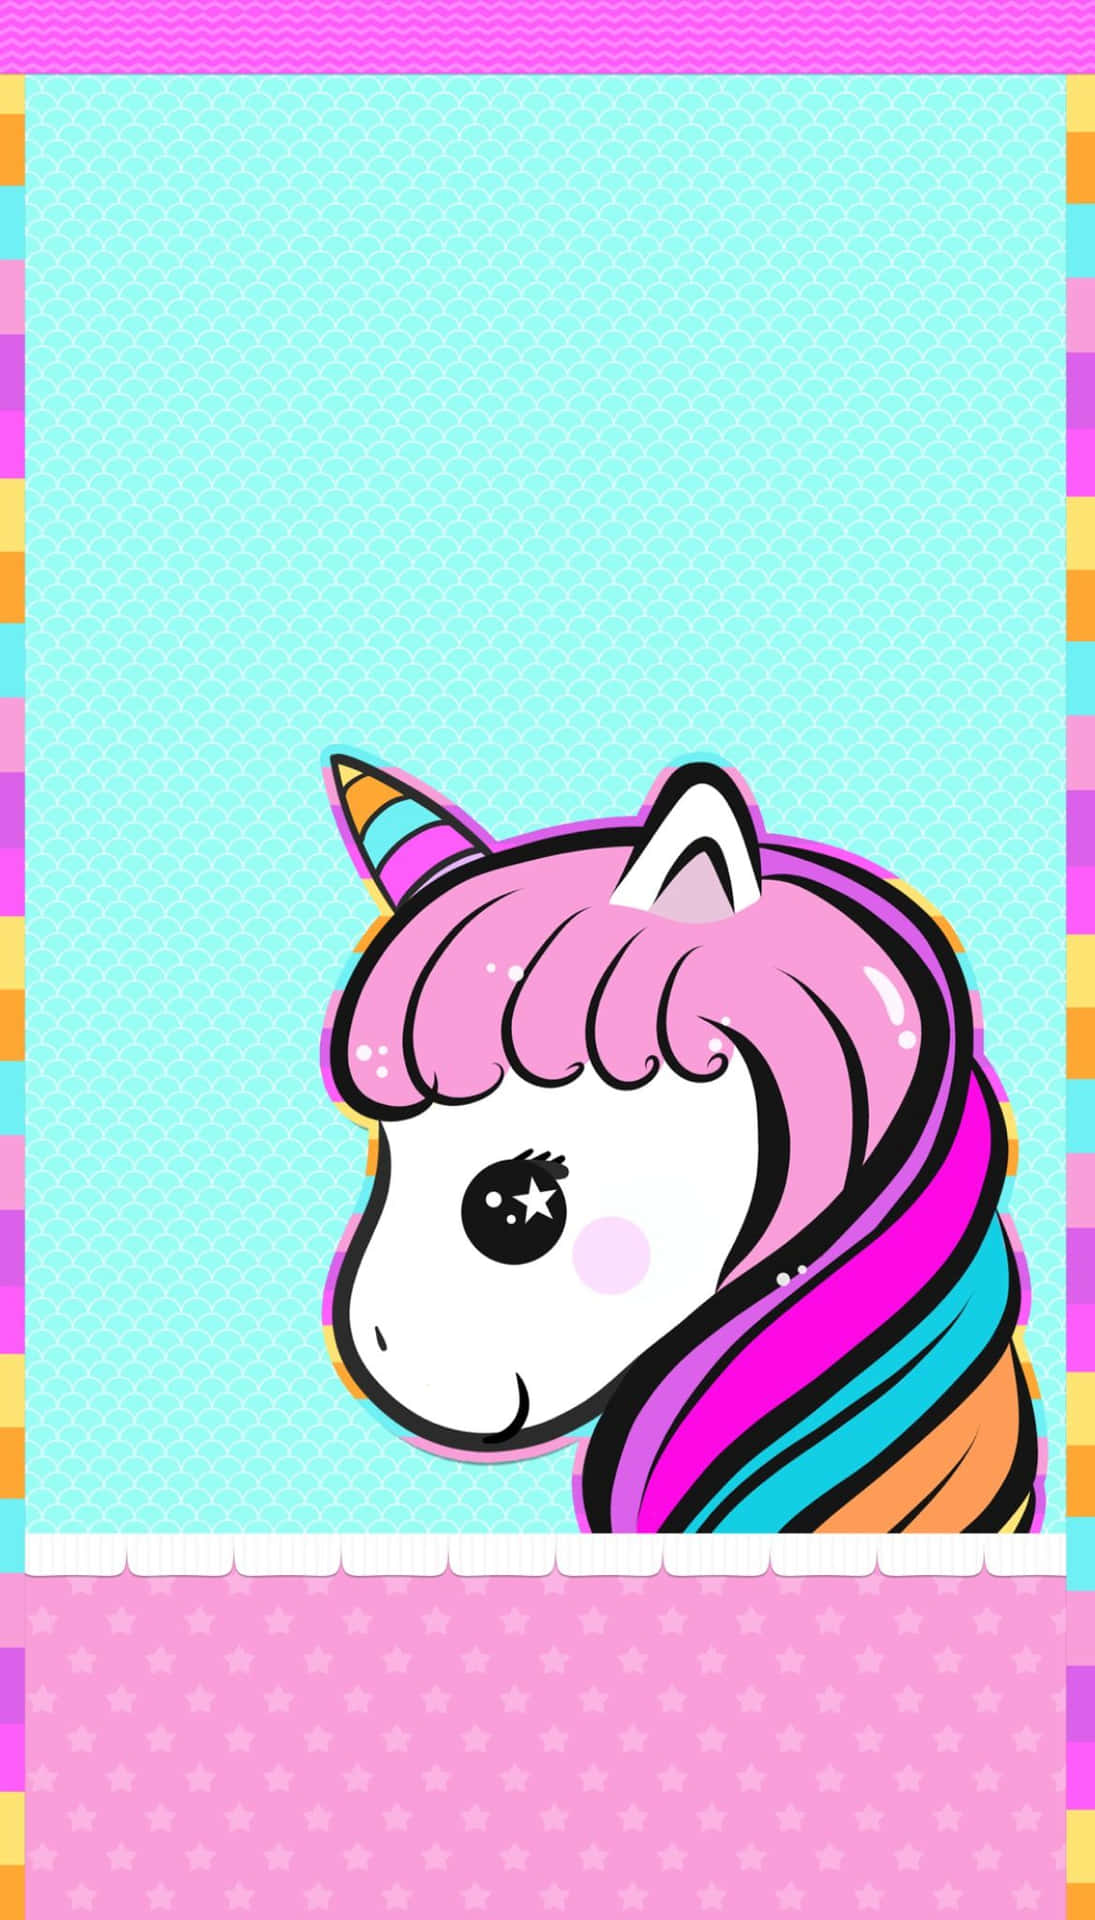 Carinounicorno, Grazioso Pony Kawaii, Immagine Illustrazione D'arte.